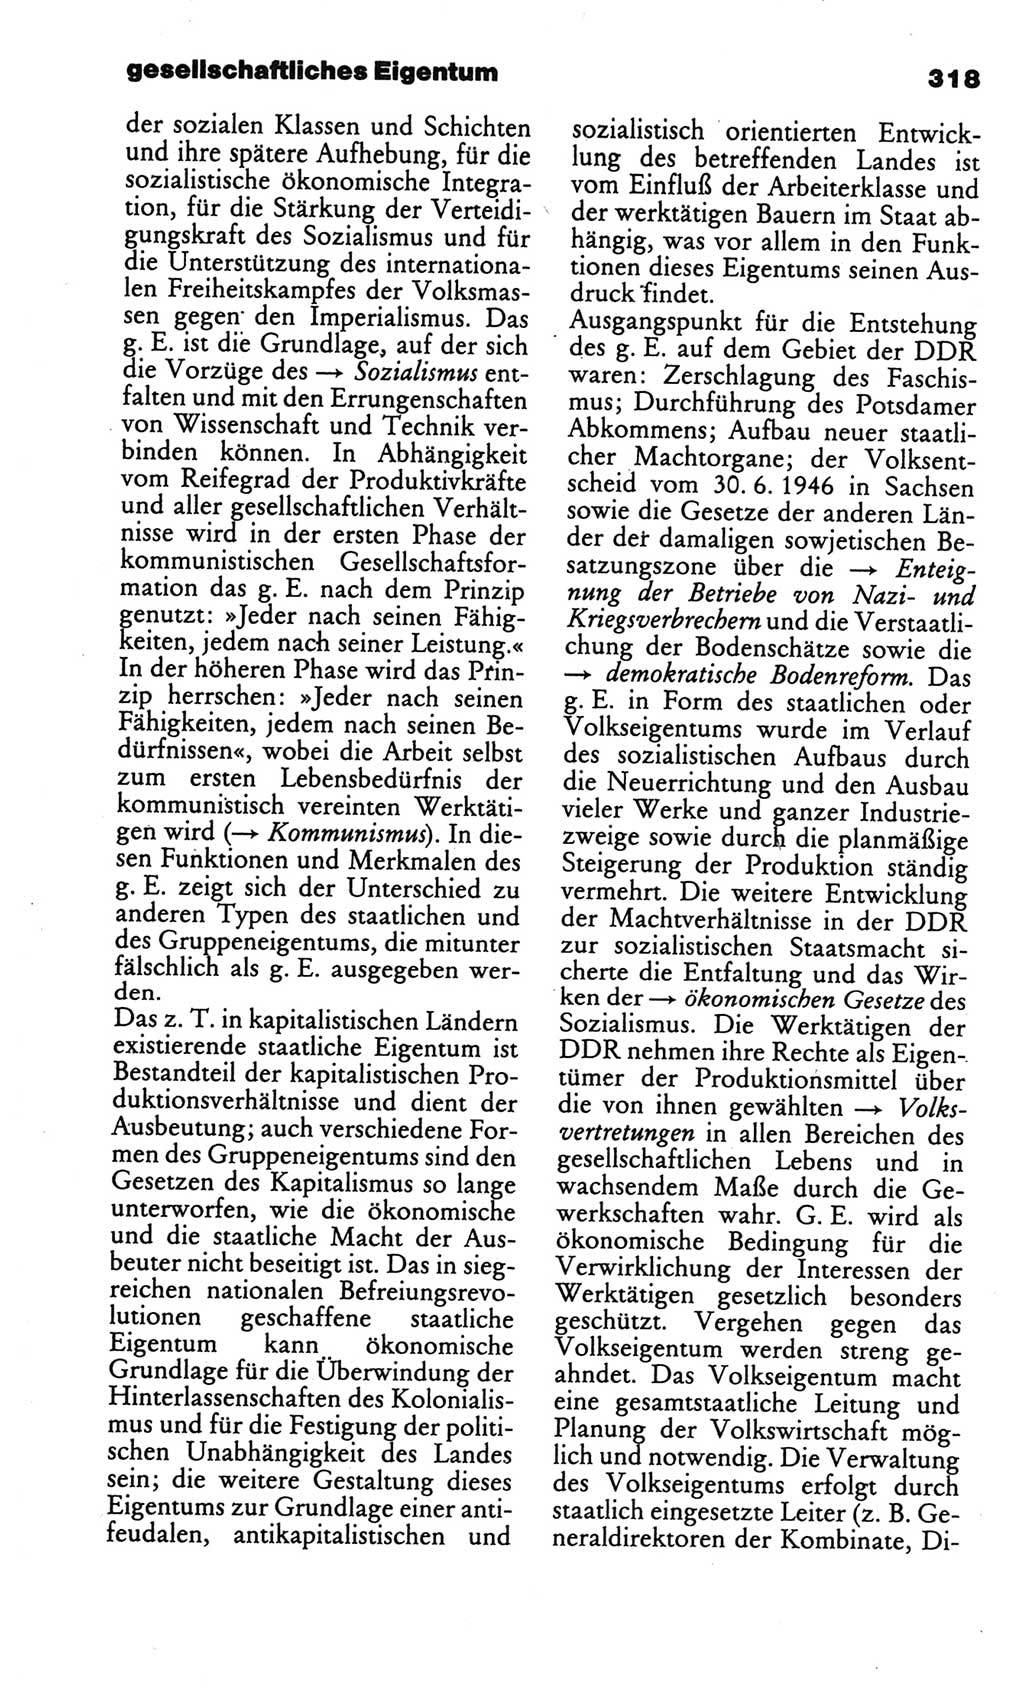 Kleines politisches Wörterbuch [Deutsche Demokratische Republik (DDR)] 1986, Seite 318 (Kl. pol. Wb. DDR 1986, S. 318)